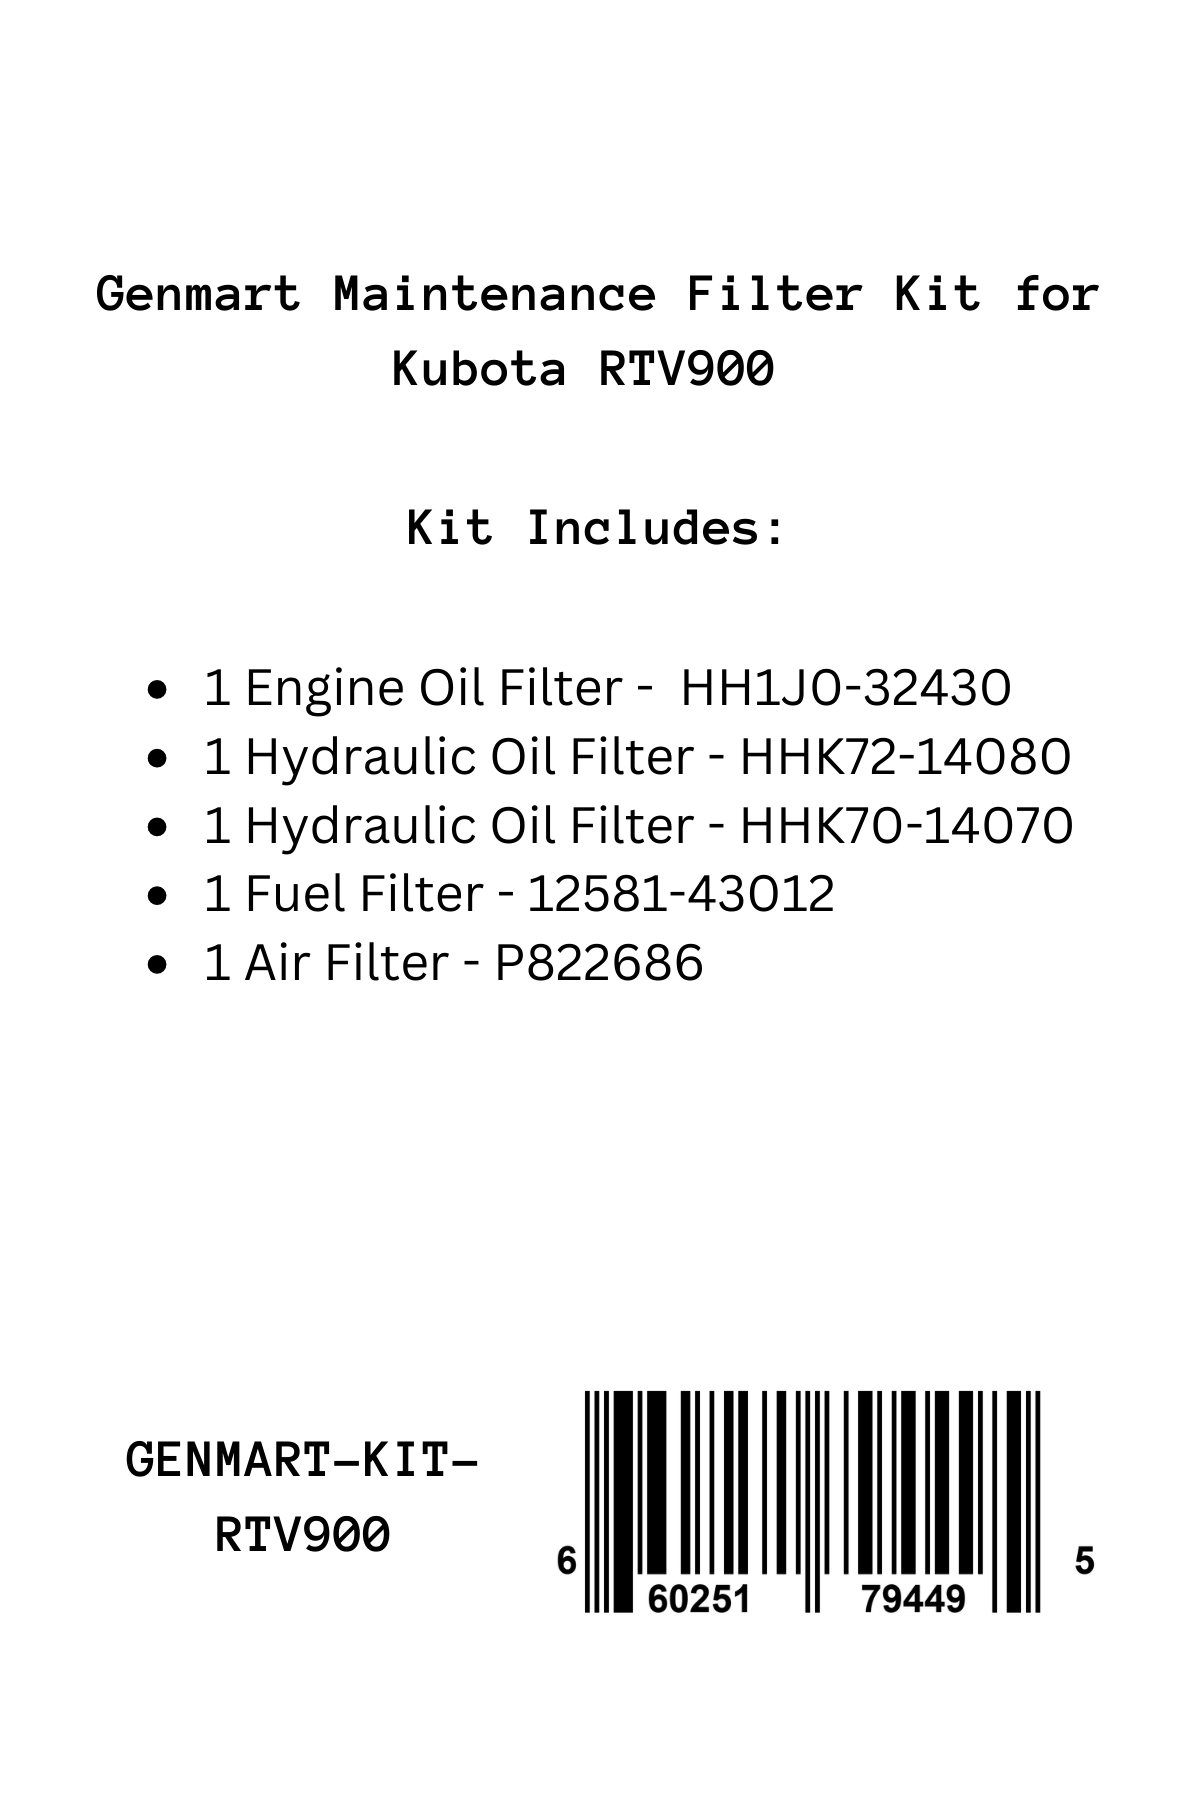 Genmart Maintenance Kit for Kubota RTV900